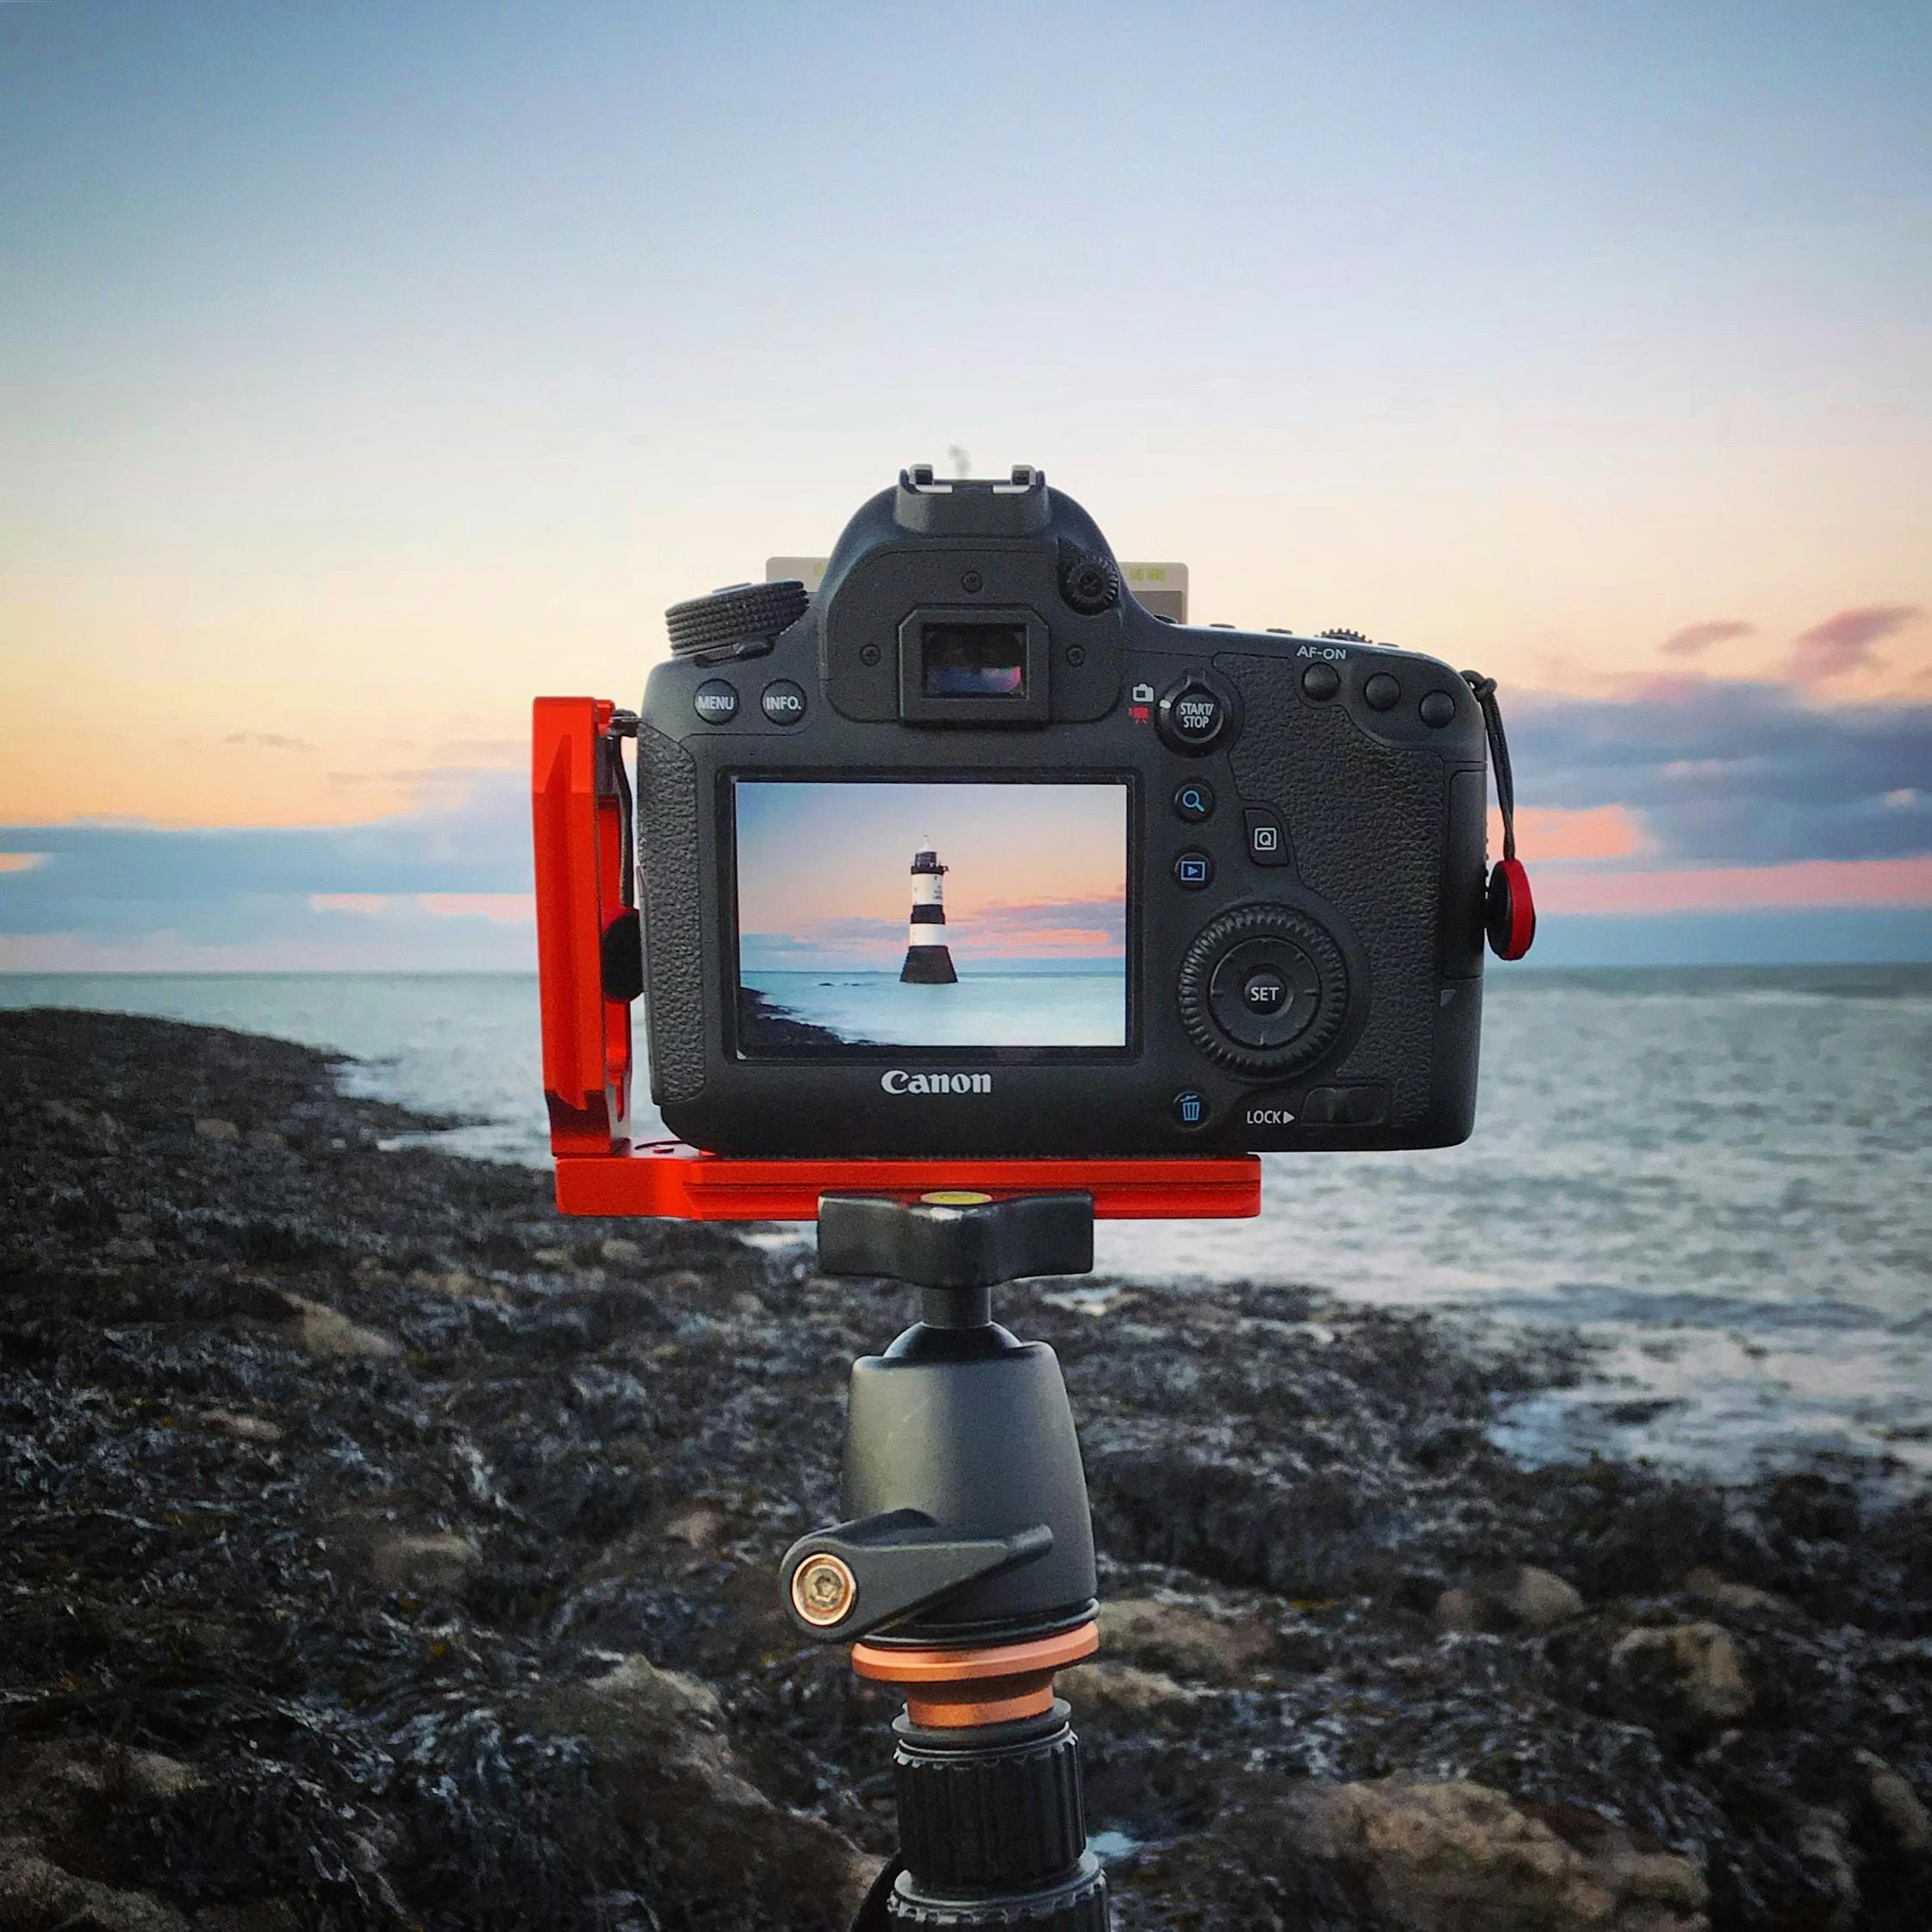 et digitalt kamera sidder på et stativ i en kystscene - typer af kameraer | digital 